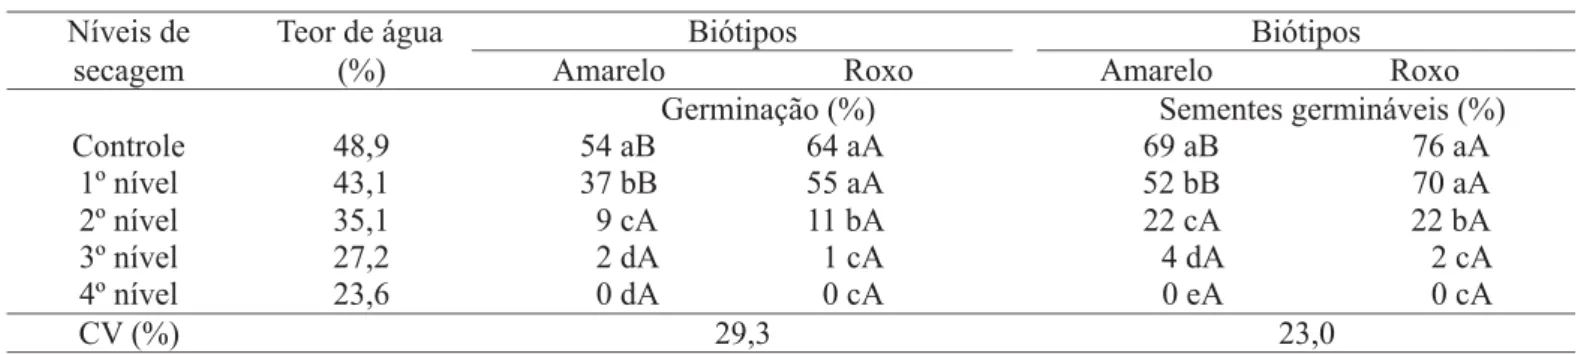 TABELA 2.  Germinação (%) e sementes germináveis (%) de grumixameira (Eugenia brasiliensis Lam.), de dois biótipos (amarelo e roxo), submetidas a diferentes níveis de secagem (médias dos cinco períodos de armazenamento)